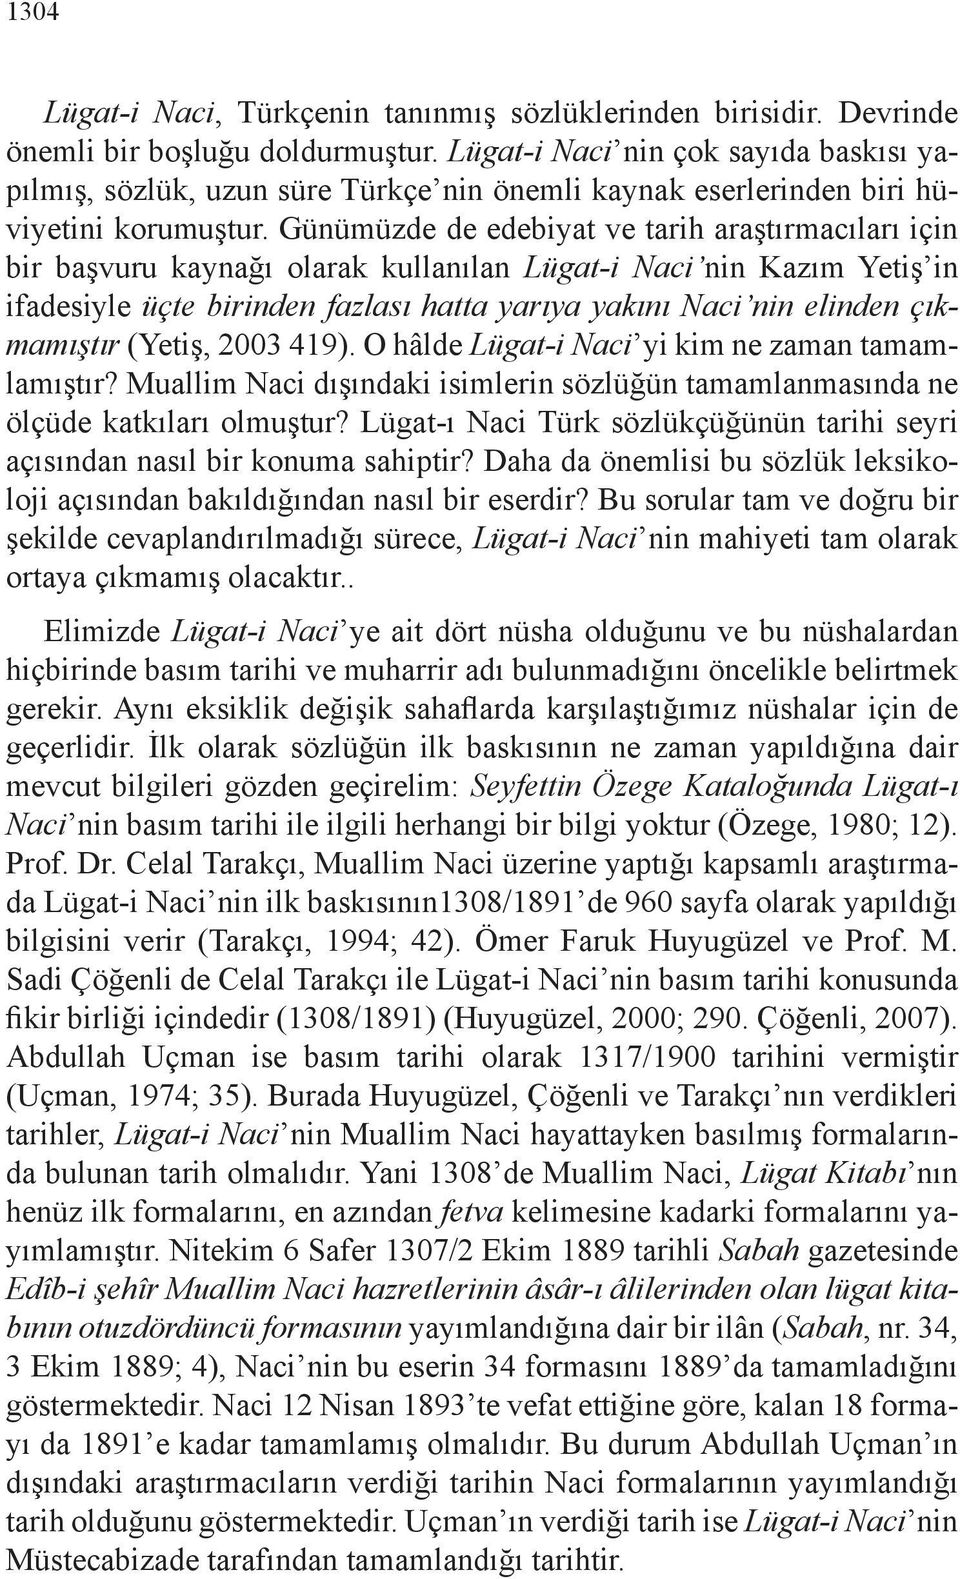 Günümüzde de edebiyat ve tarih araştırmacıları için bir başvuru kaynağı olarak kullanılan Lügat-i Naci nin Kazım Yetiş in ifadesiyle üçte birinden fazlası hatta yarıya yakını Naci nin elinden